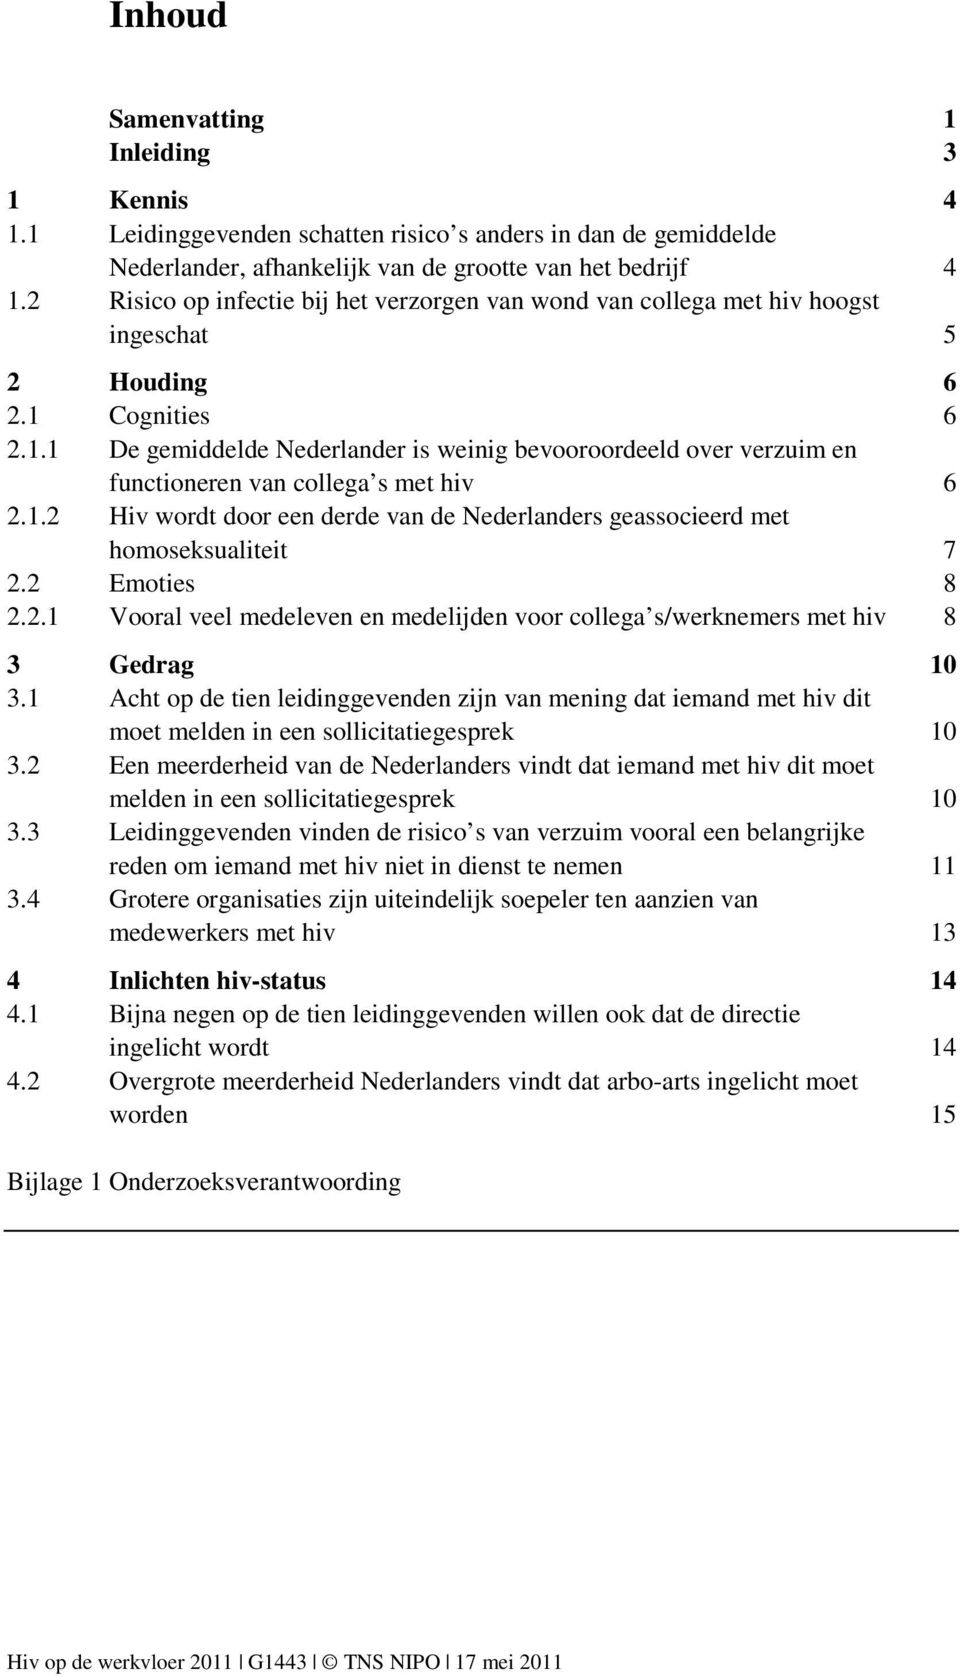 Cognities 6 2.1.1 De gemiddelde Nederlander is weinig bevooroordeeld over verzuim en functioneren van collega s met hiv 6 2.1.2 Hiv wordt door een derde van de Nederlanders geassocieerd met homoseksualiteit 7 2.